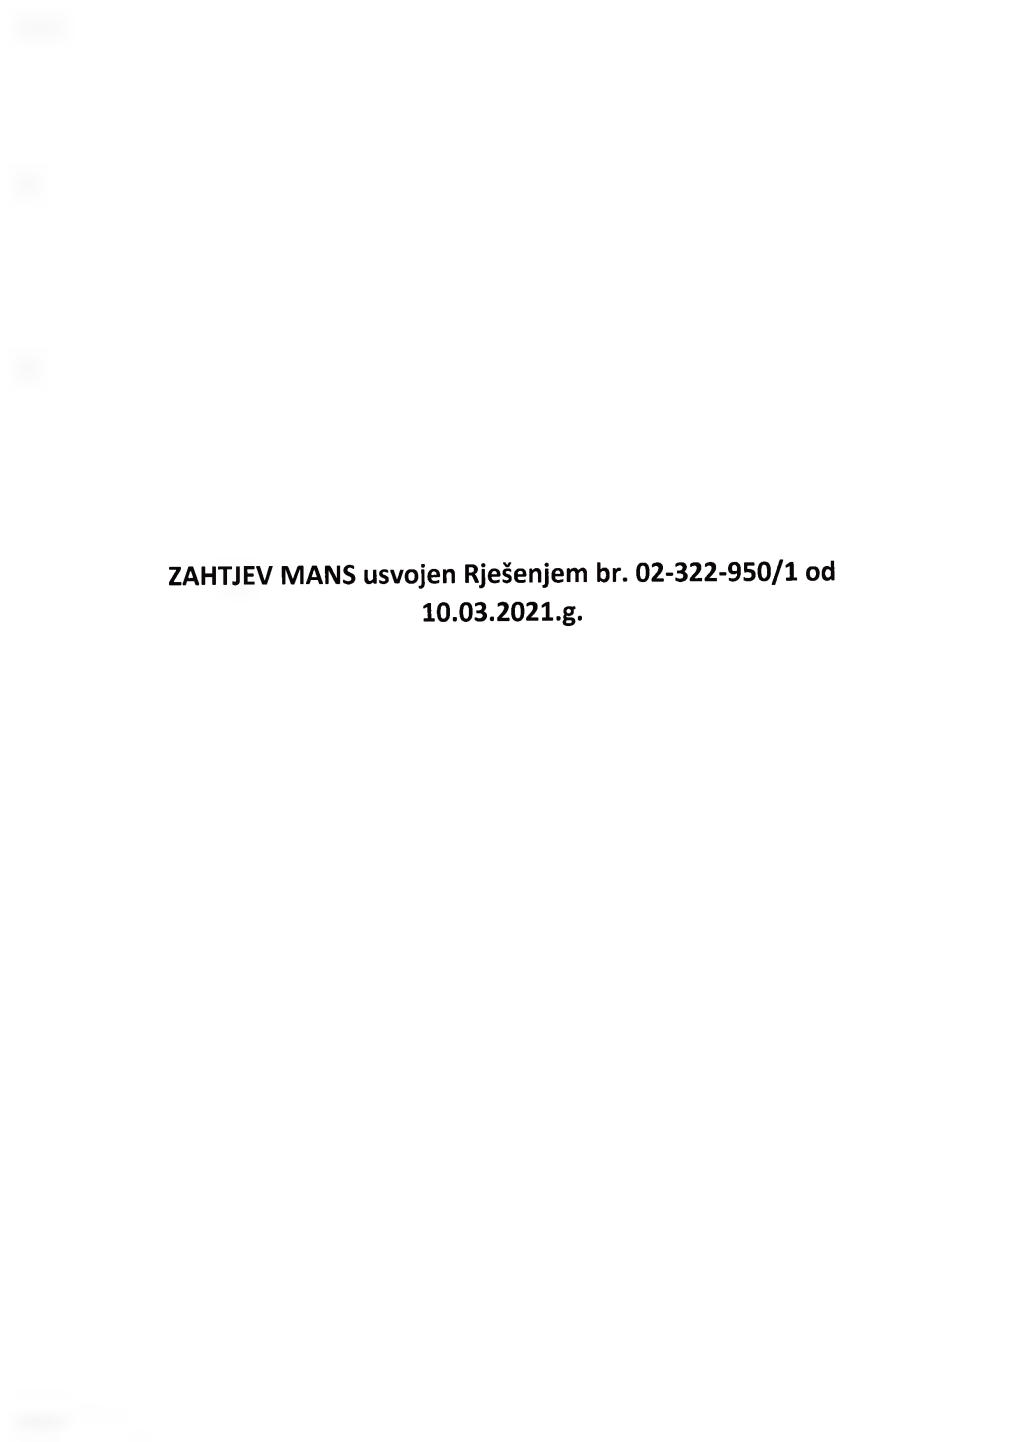 ZAHTJEV MANS Usvojen Rješenjem Br. 02-322-950/1 Od 10.03.2021.G